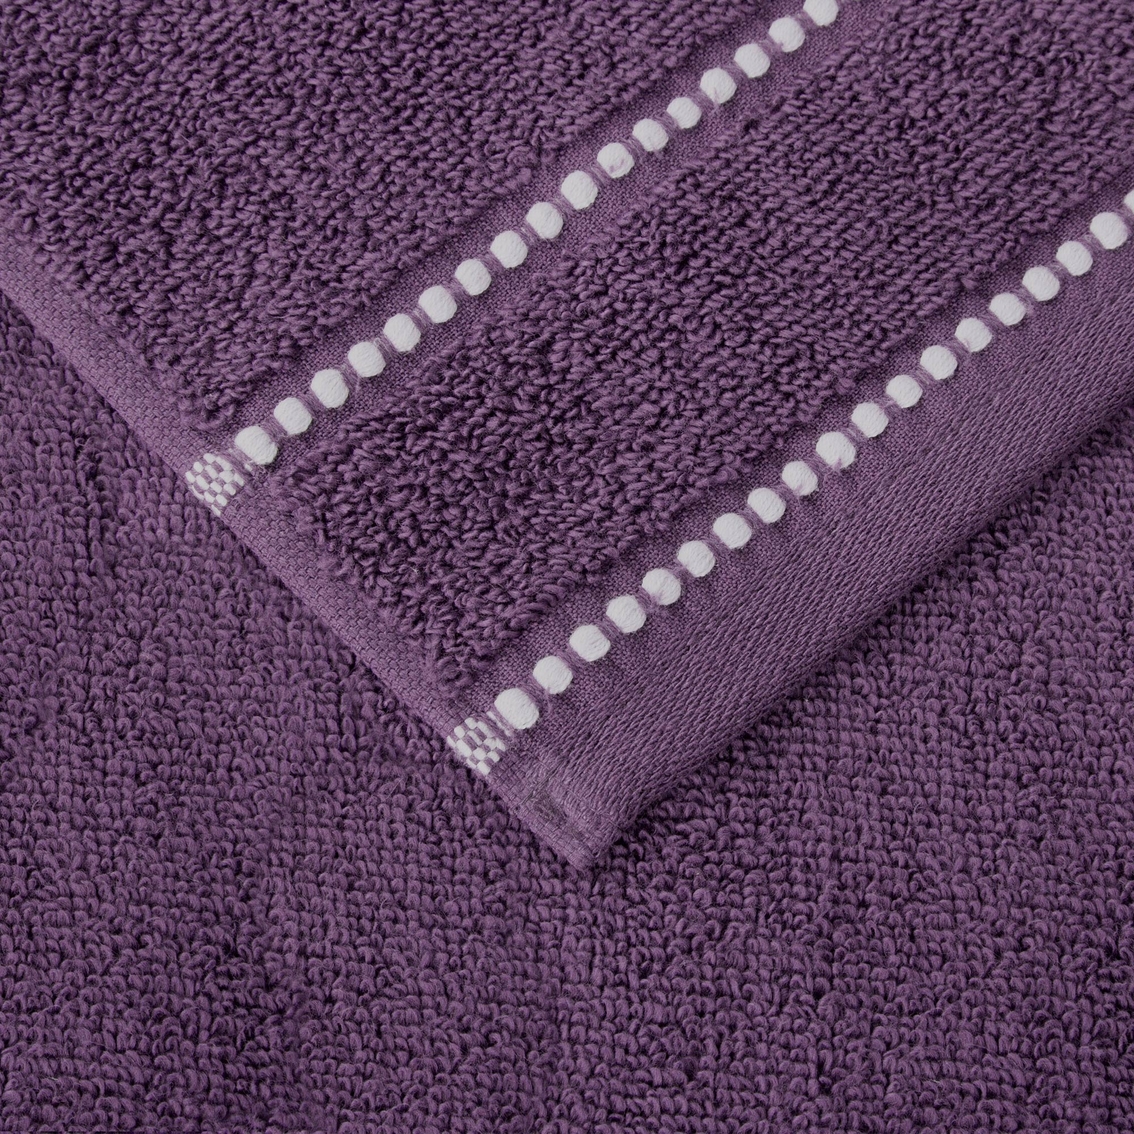 Lavish Home Luxury Quick Dry Zero Twist Cotton Towel 6 pc. Set - Image 3 of 3